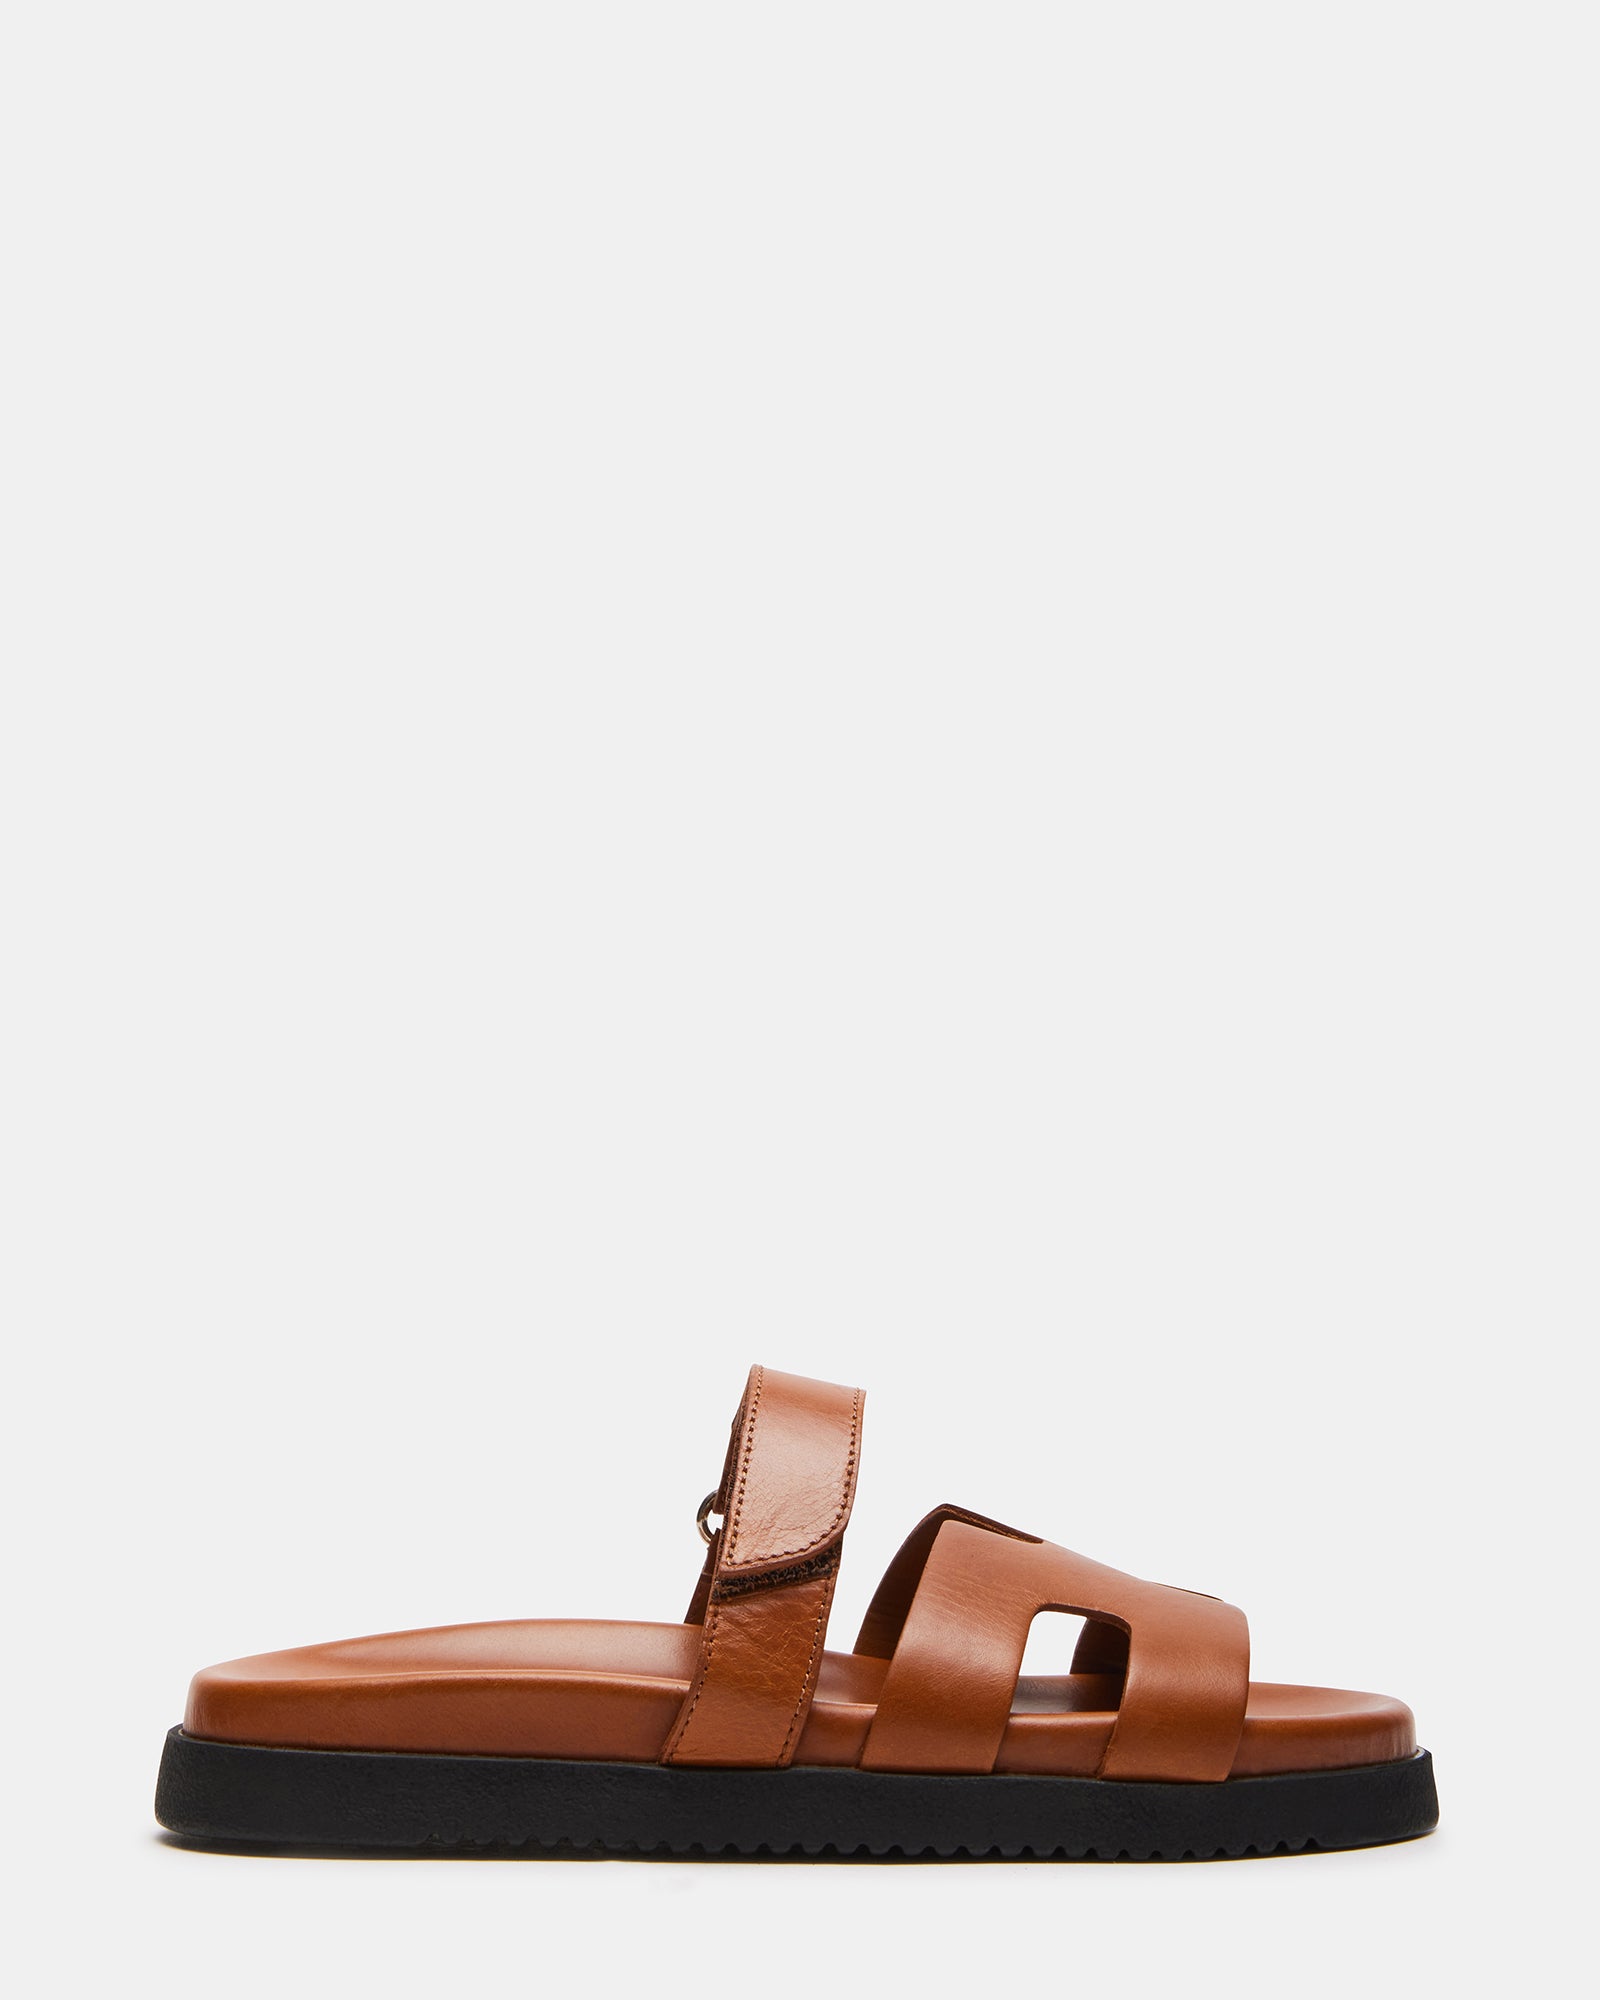 MAYVEN Camel Leather Flatform Slide Sandal | Women's Sandals – Steve Madden